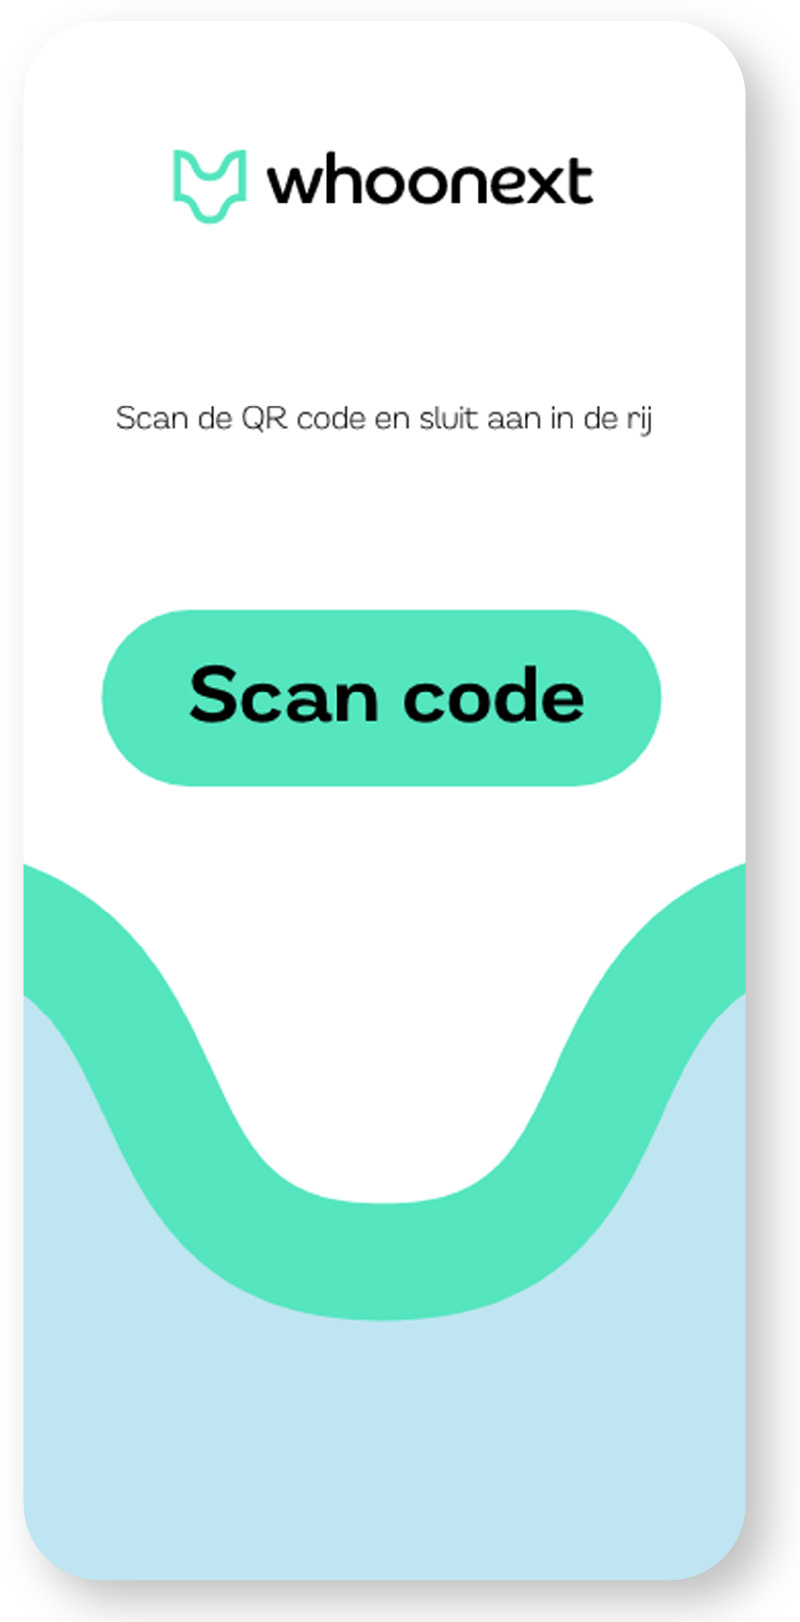 Whoonext digitalerij app - scan qr code